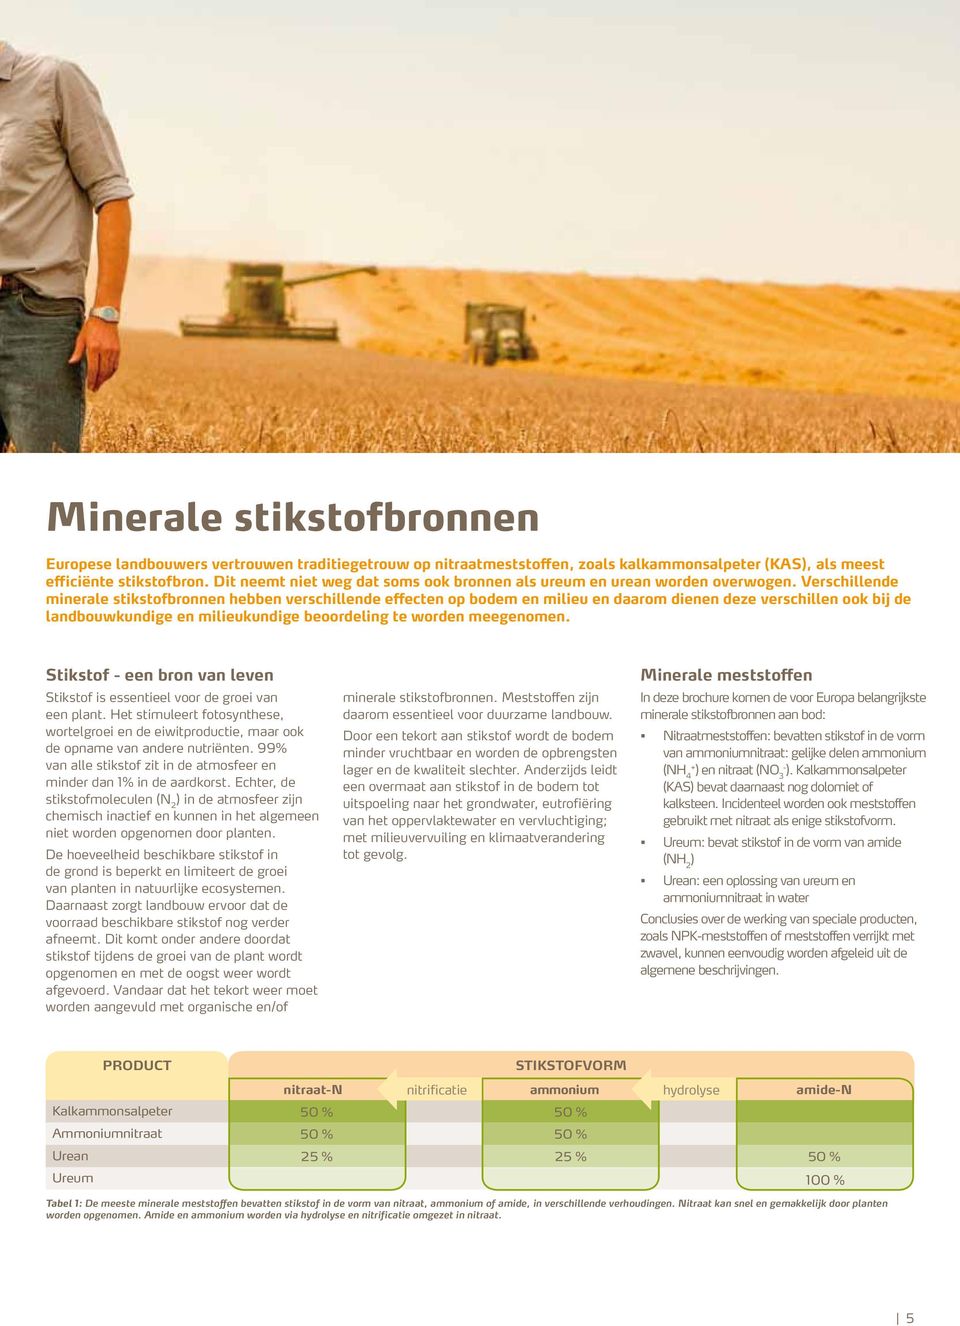 Verschillende minerale stikstofbronnen hebben verschillende effecten op bodem en milieu en daarom dienen deze verschillen ook bij de landbouwkundige en milieukundige beoordeling te worden meegenomen.